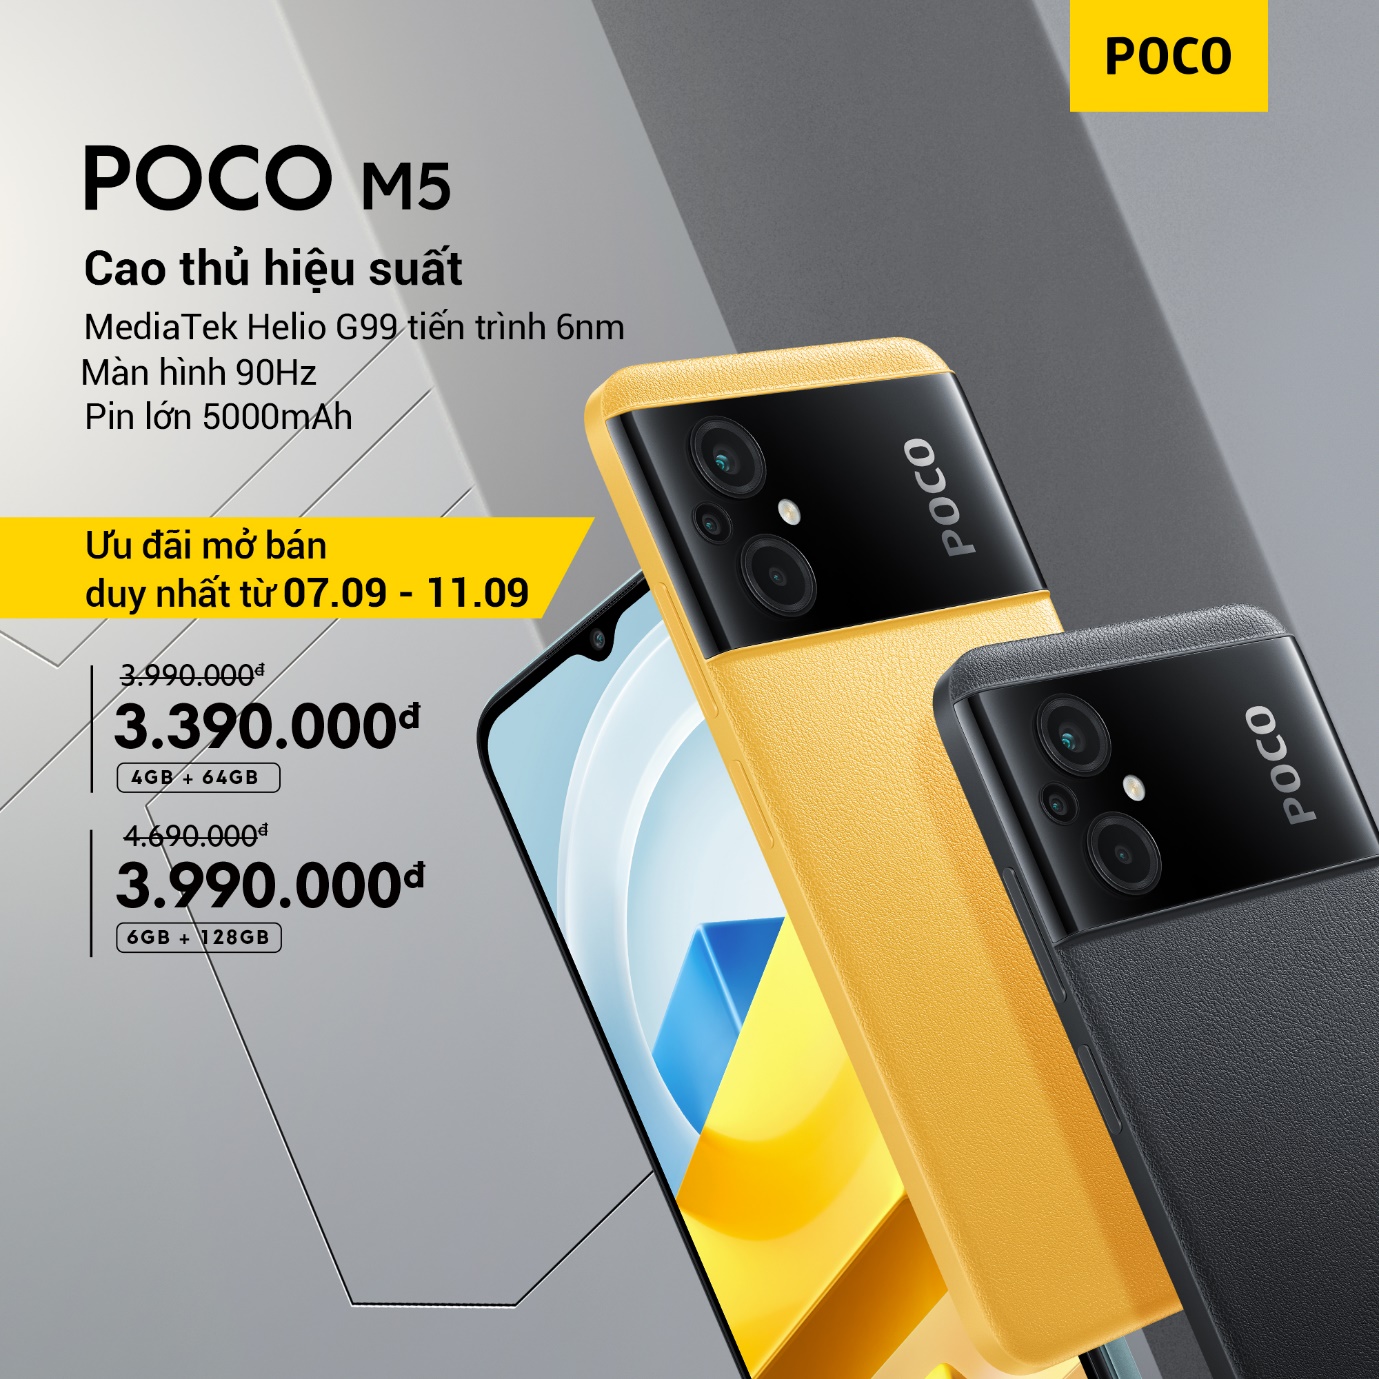 Bộ đôi POCO M5 và POCO M5s chính thức ra mắt tại thị trường Việt Nam